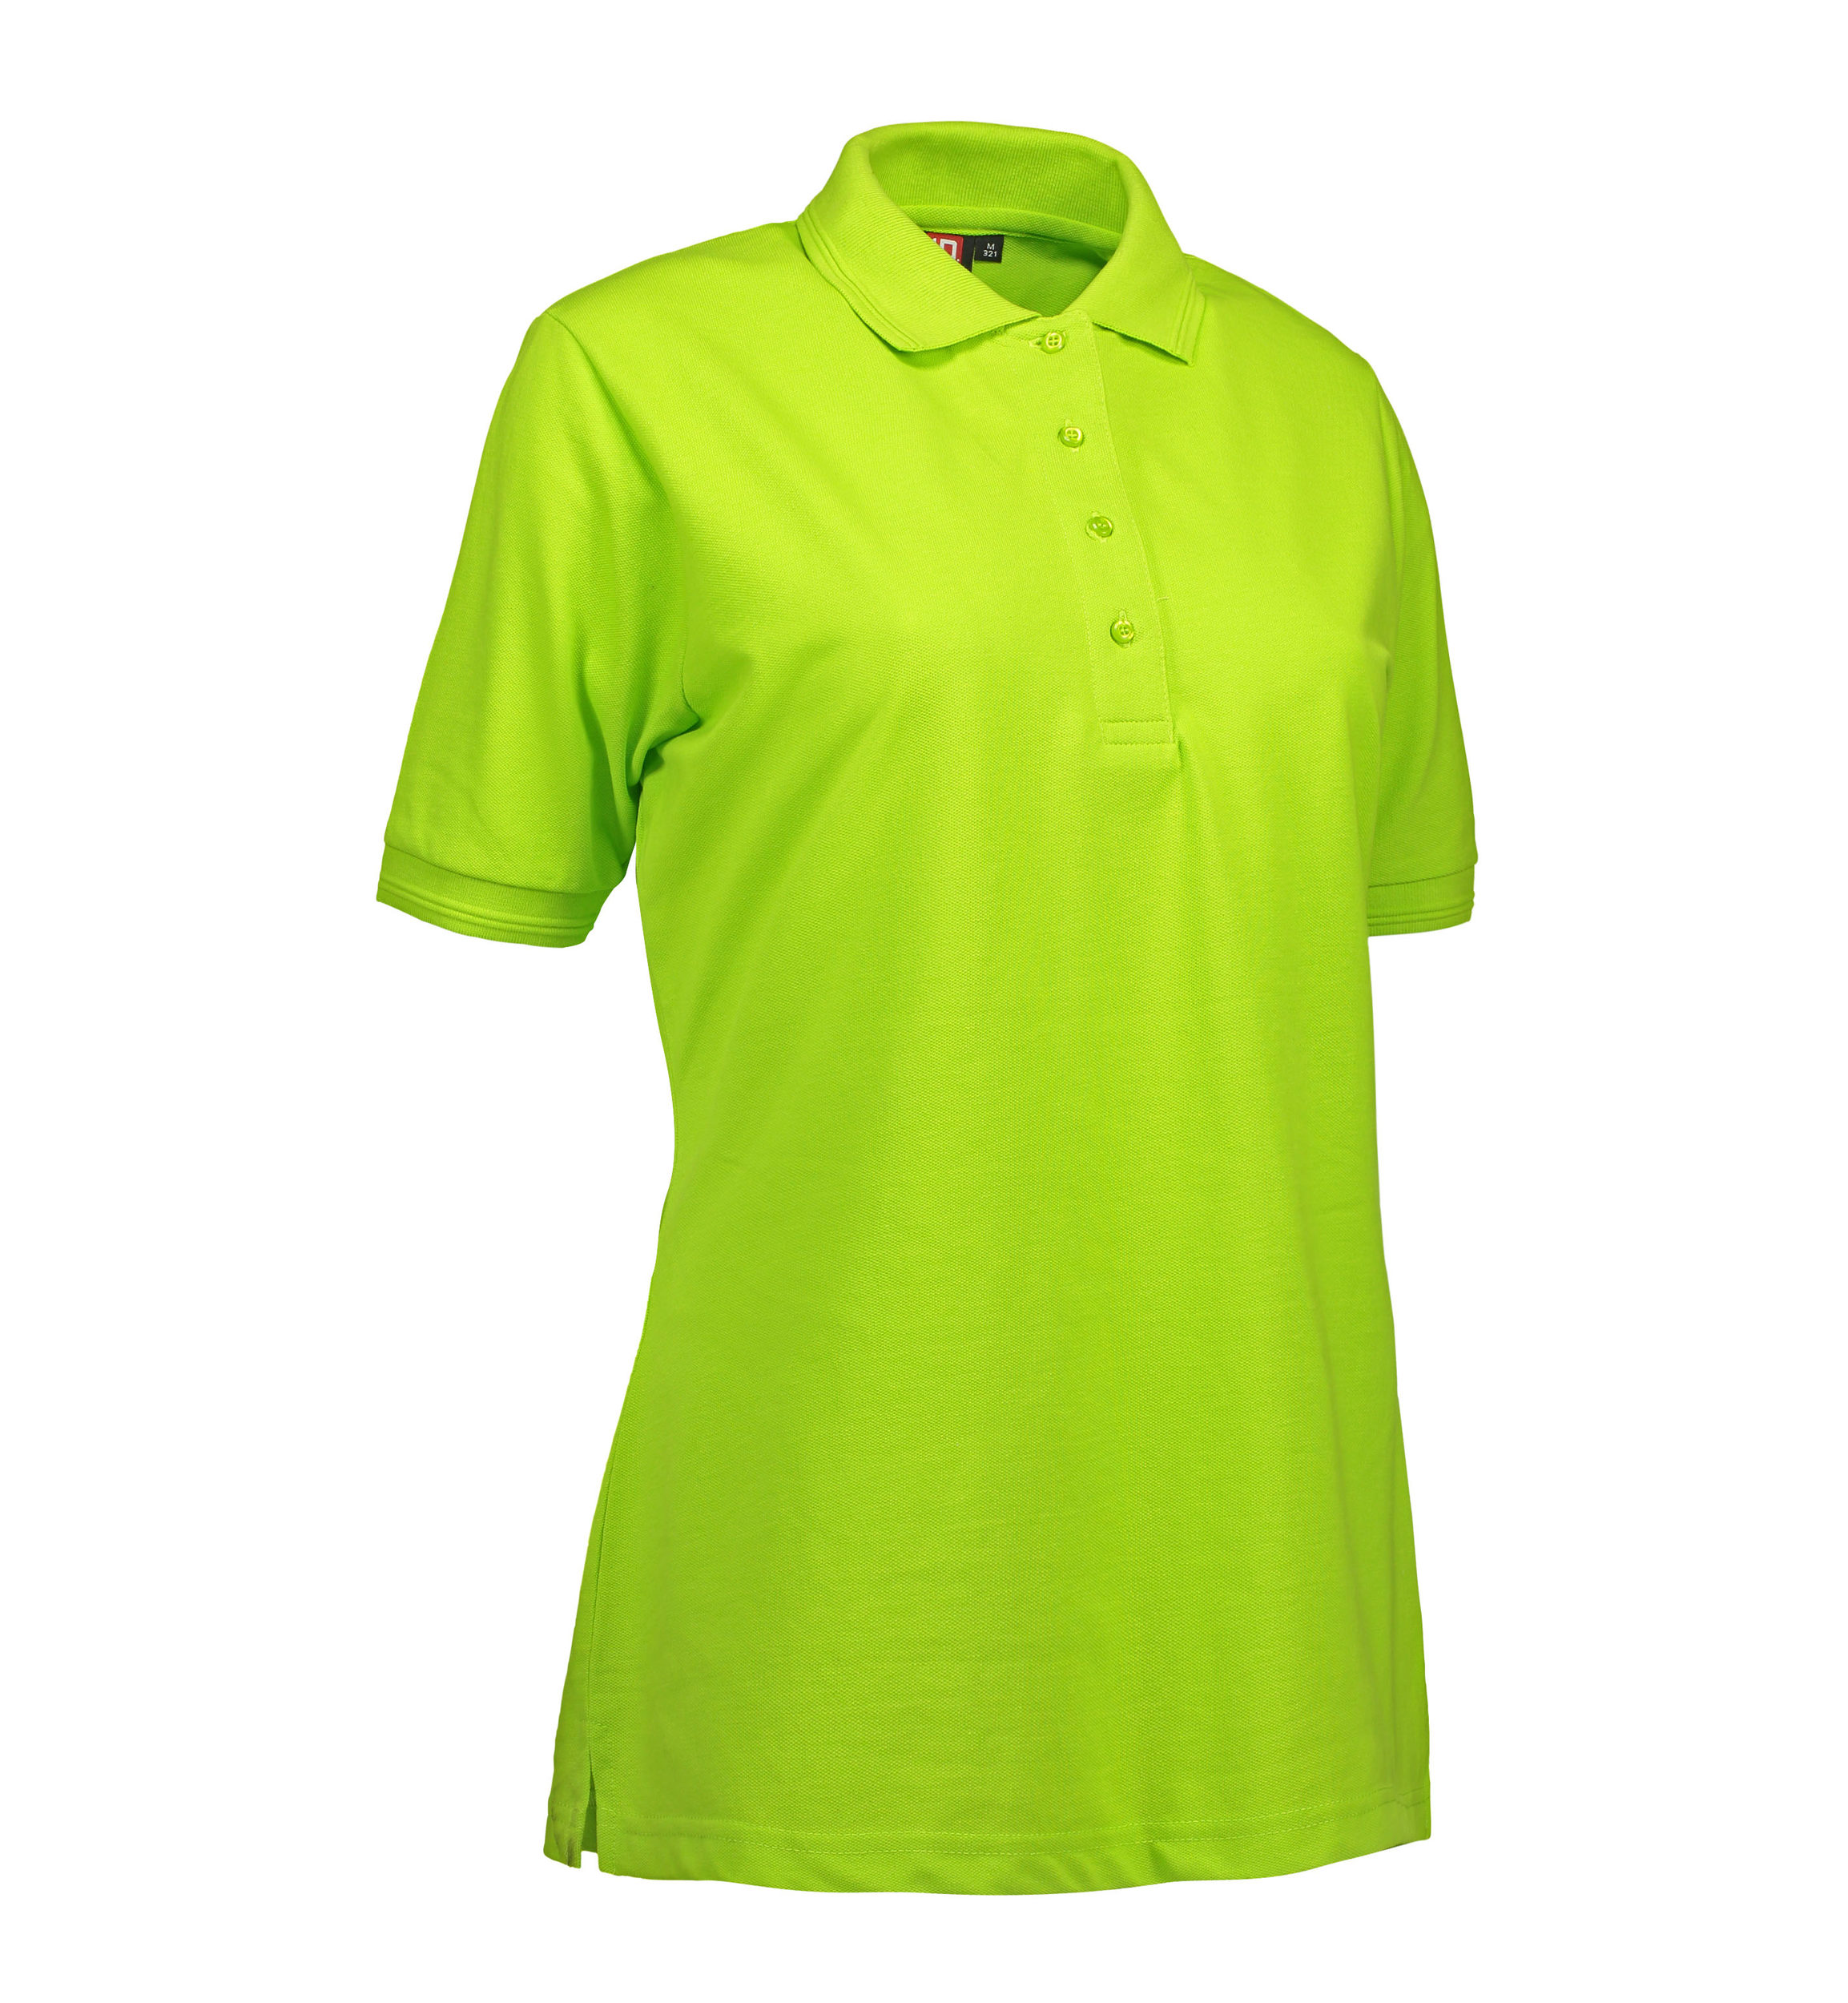 Billede af Lime farvet dame polo t-shirt i slidstærkt materiale - 2XL hos Sygeplejebutikken.dk